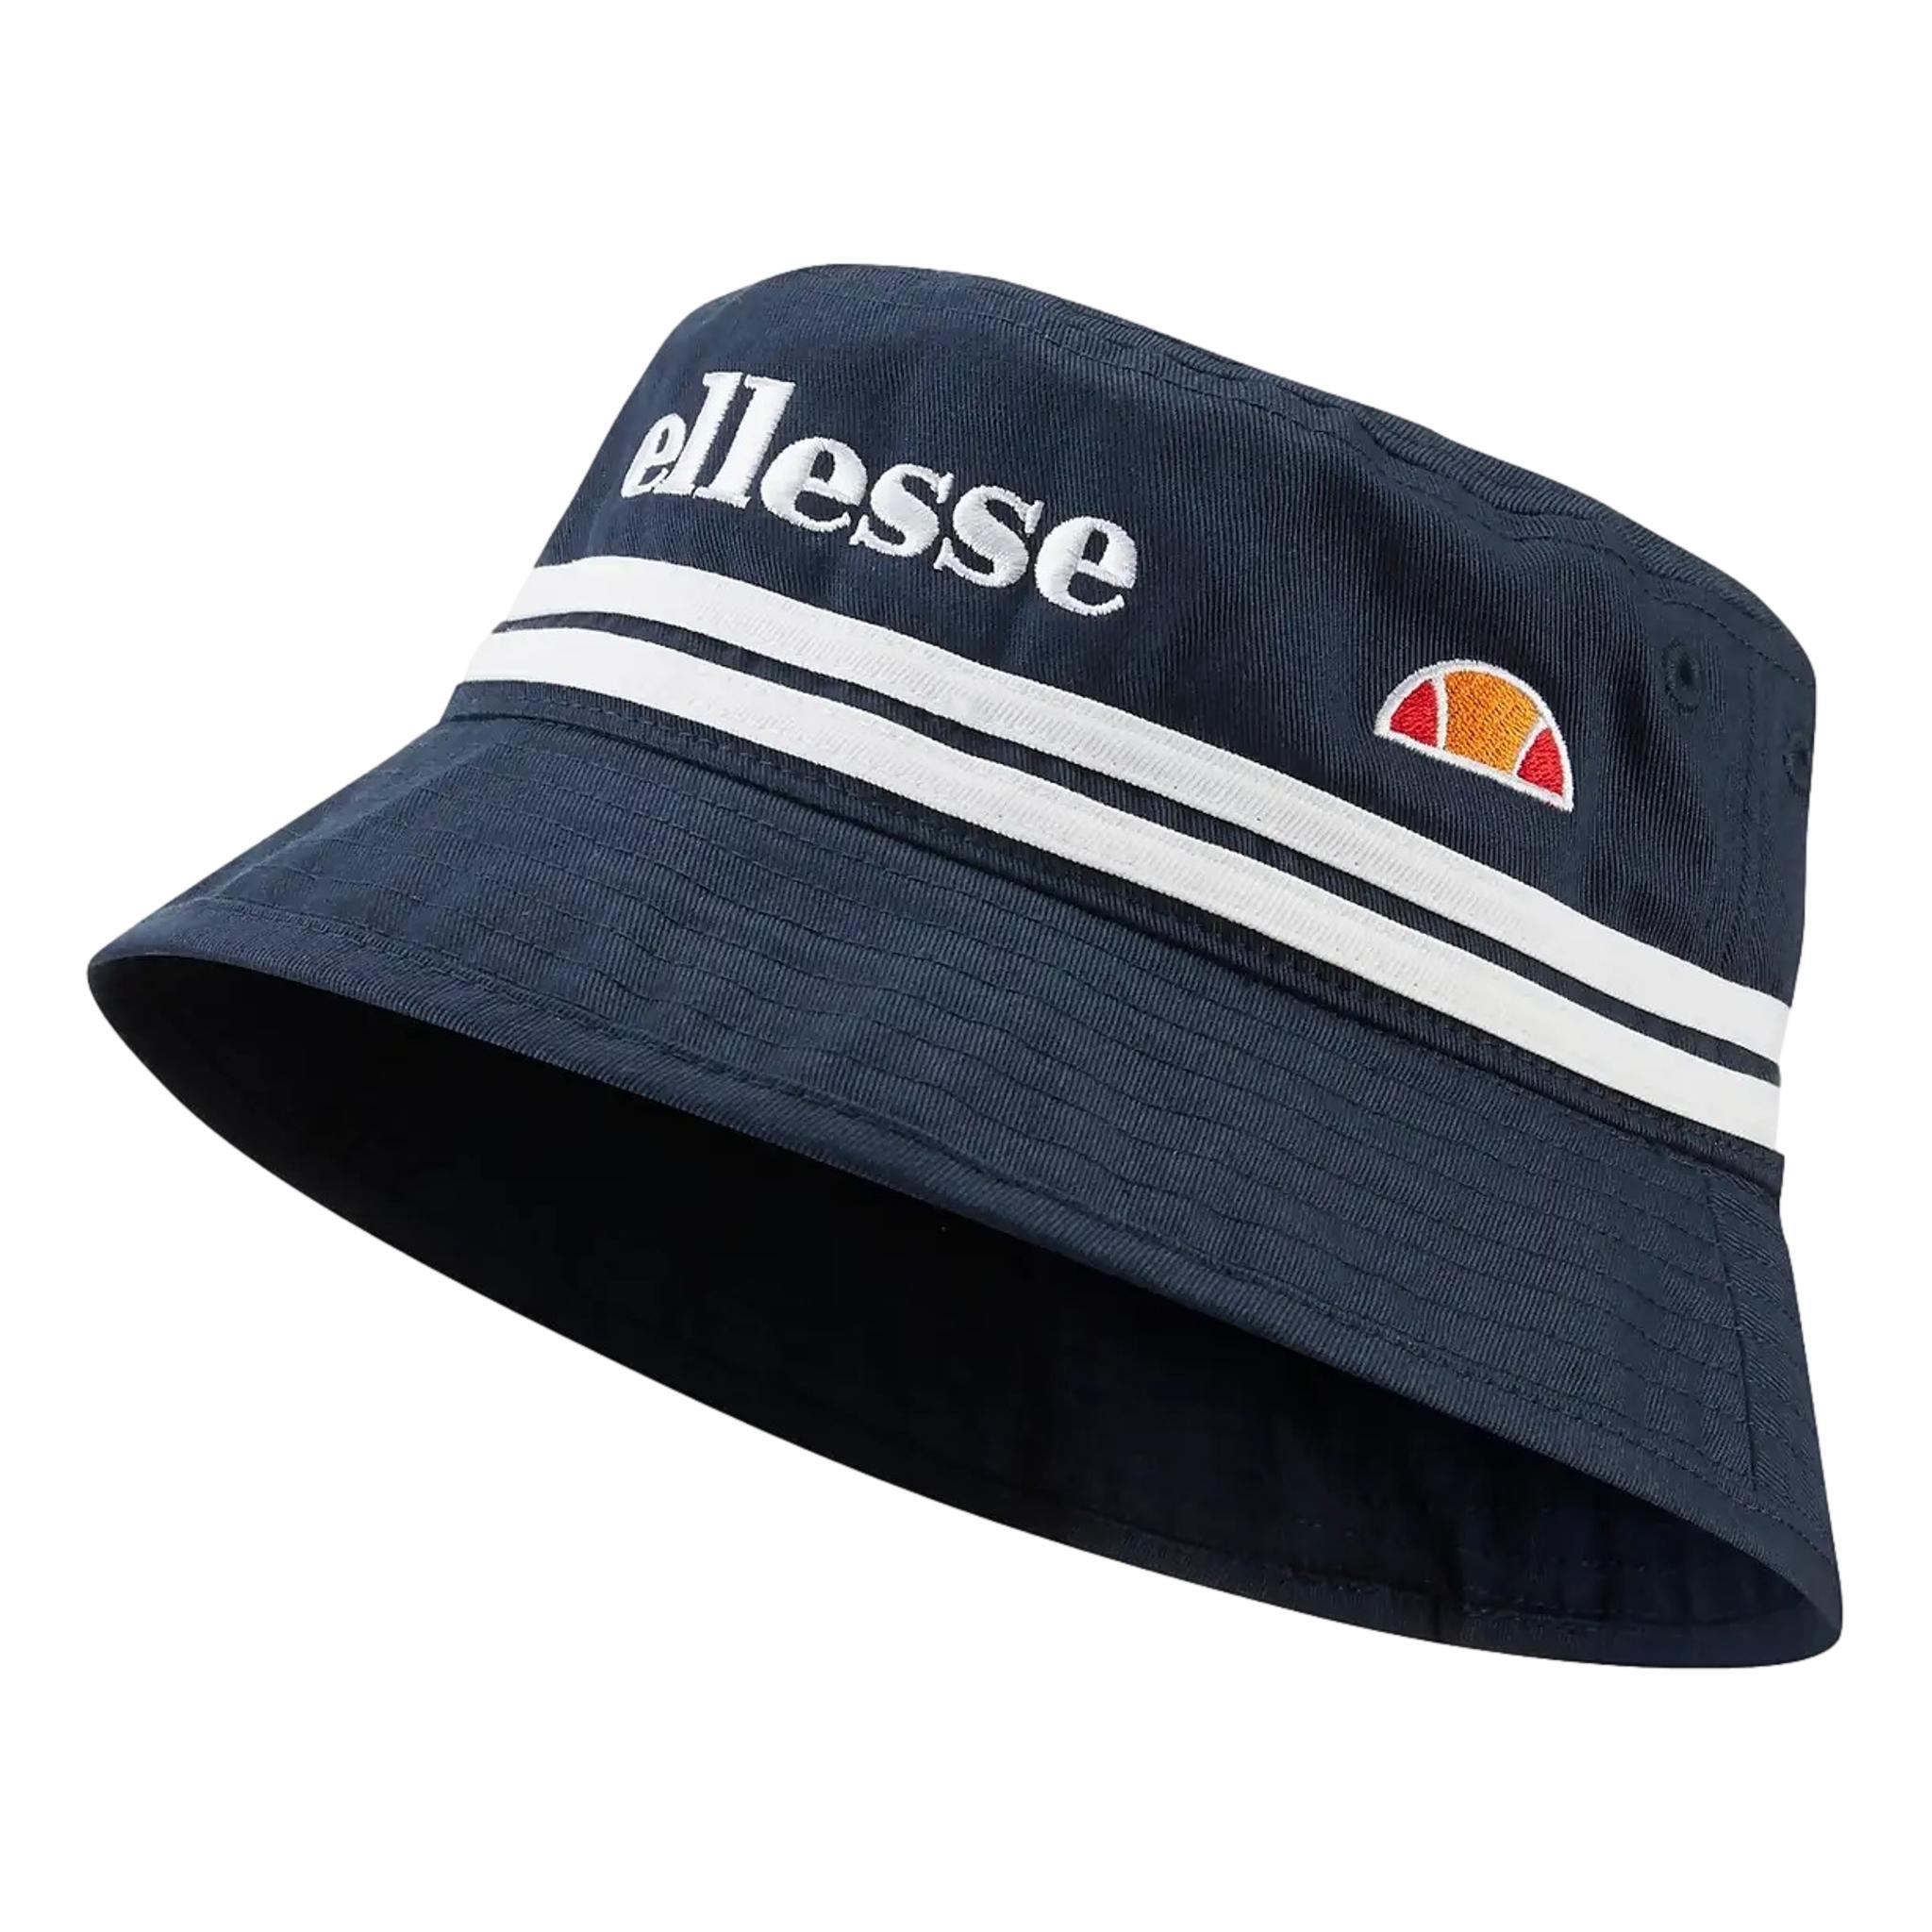 Ellesse Men's Lorenzo Bucket Hat | eBay